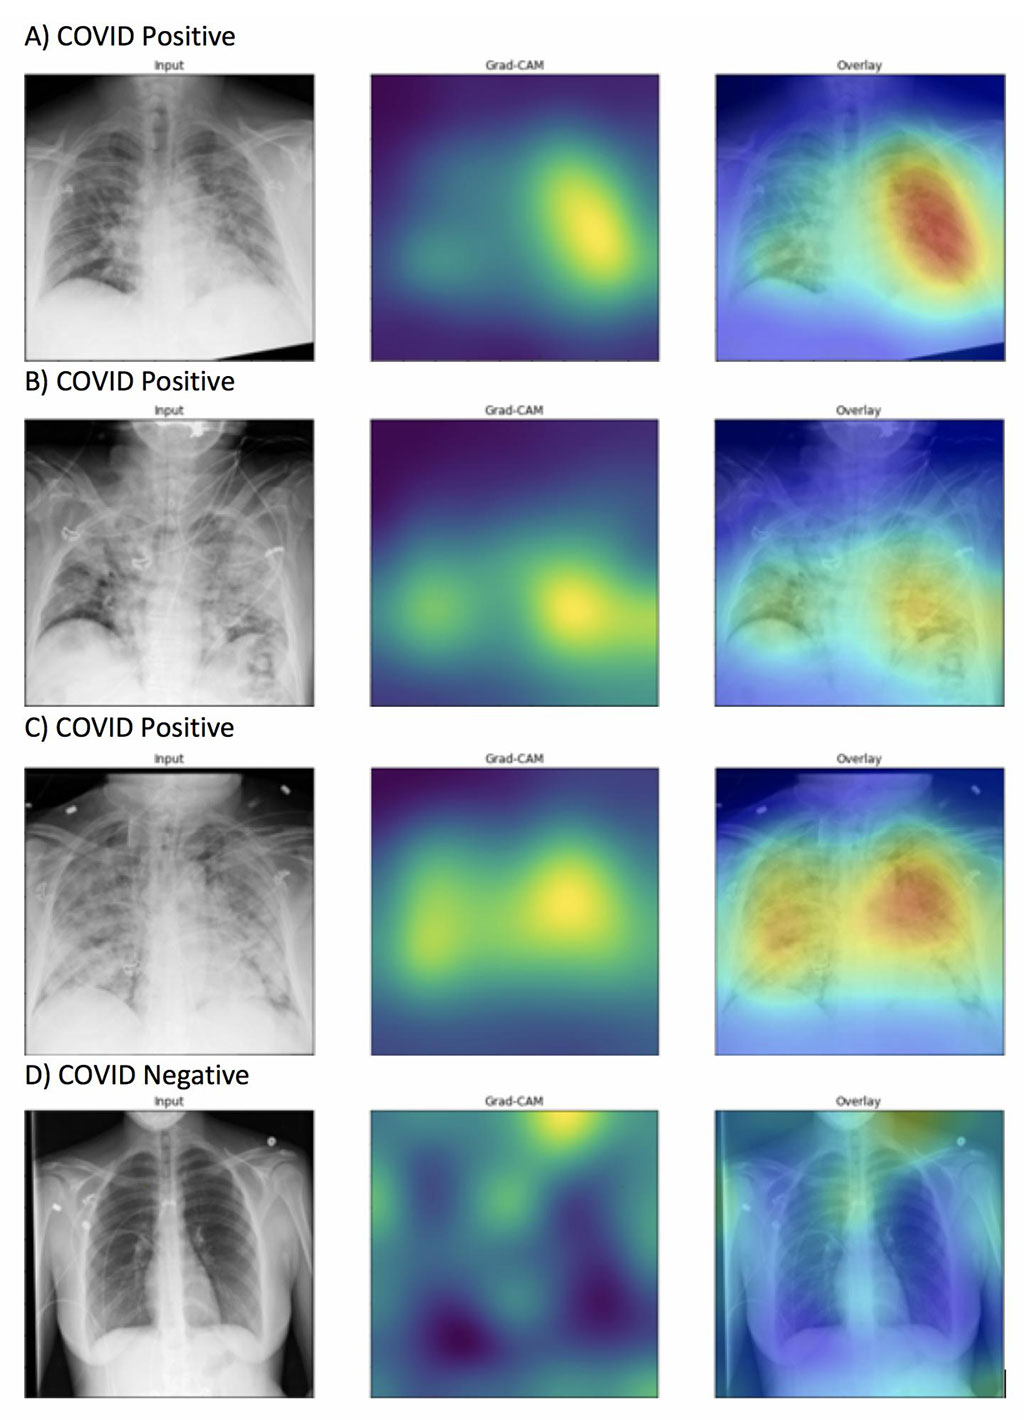 Imagen: Los mapas de calor generados resaltaron adecuadamente las anomalías de los campos pulmonares en las imágenes marcadas con exactitud como positivas para COVID-19 (de la A a la C) a diferencia de las imágenes que fueron marcadas con exactitud como negativas para COVID-19 (D). La intensidad de los colores que aparecen en el mapa de calor corresponde a las características de la imagen que son significativas para predecir la positividad para COVID-19 (Fotografía cortesía de la Universidad Northwestern)